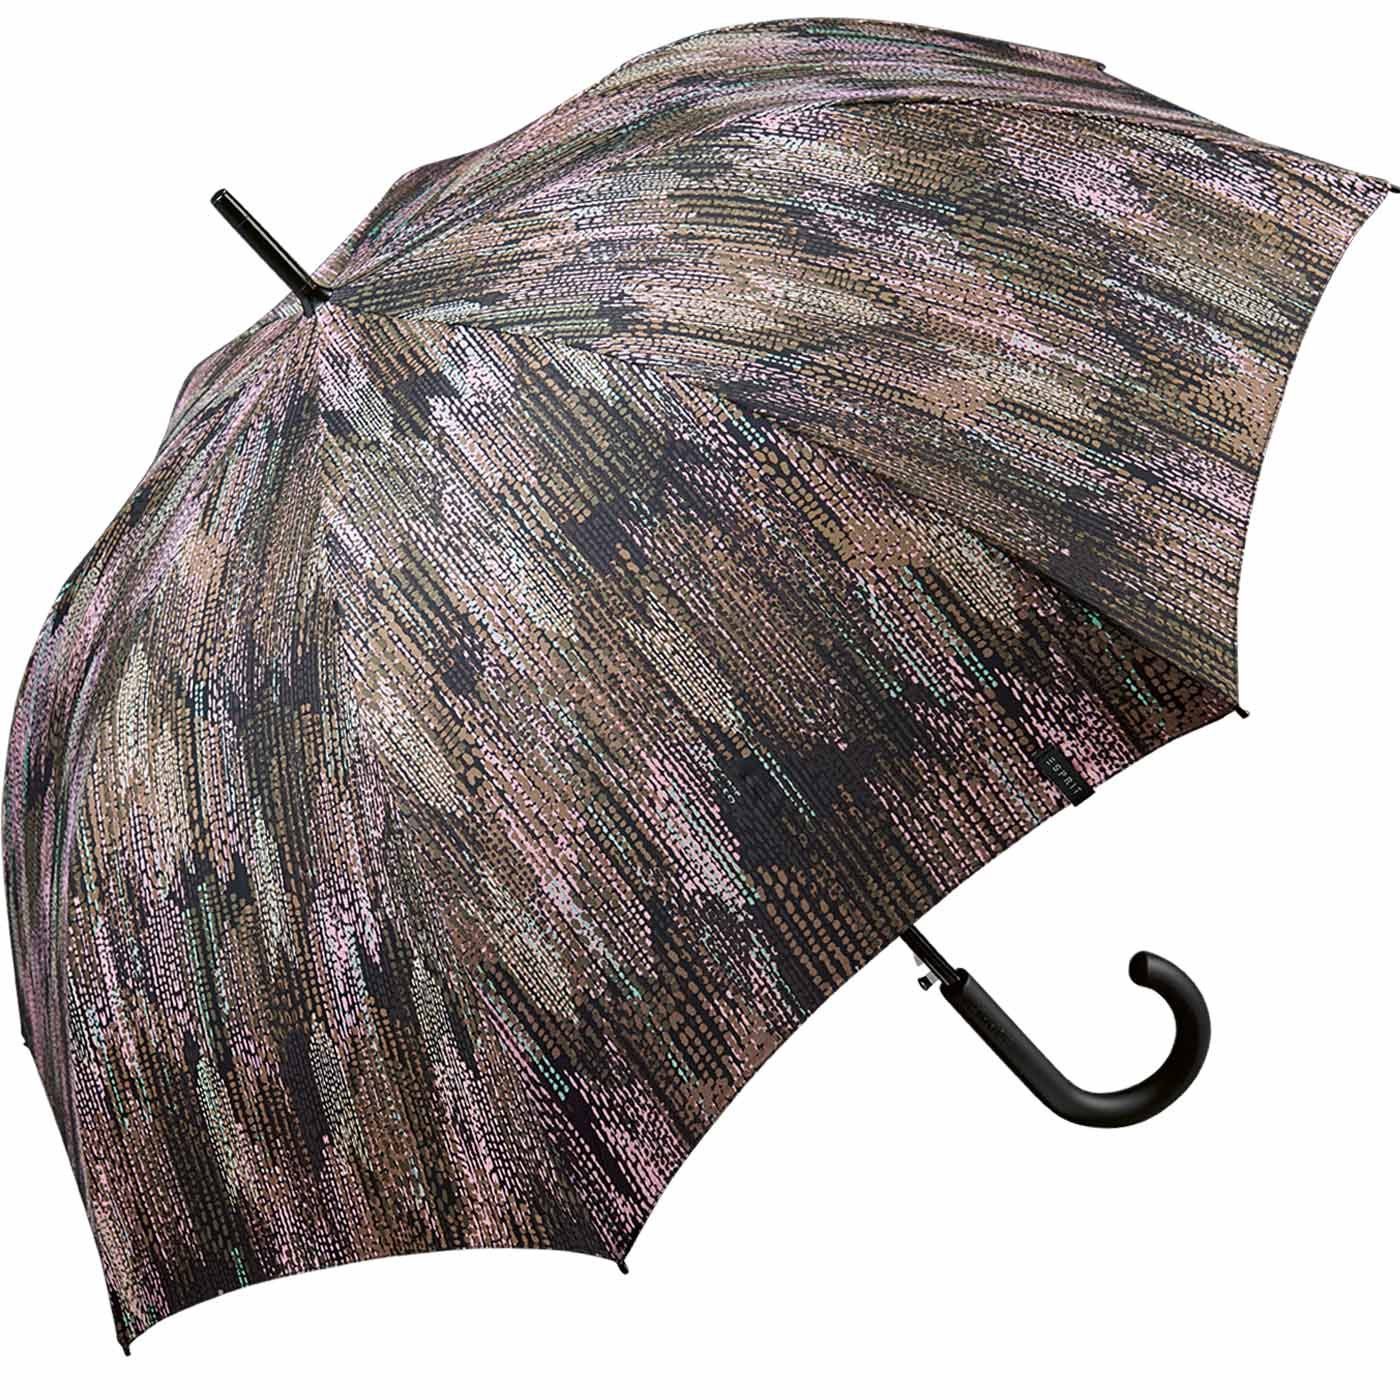 gray, - Edges Blurred Damen braun verwaschener Esprit mit in Auf-Automatik taupe groß, - stabil, gedeckter Langregenschirm Optik